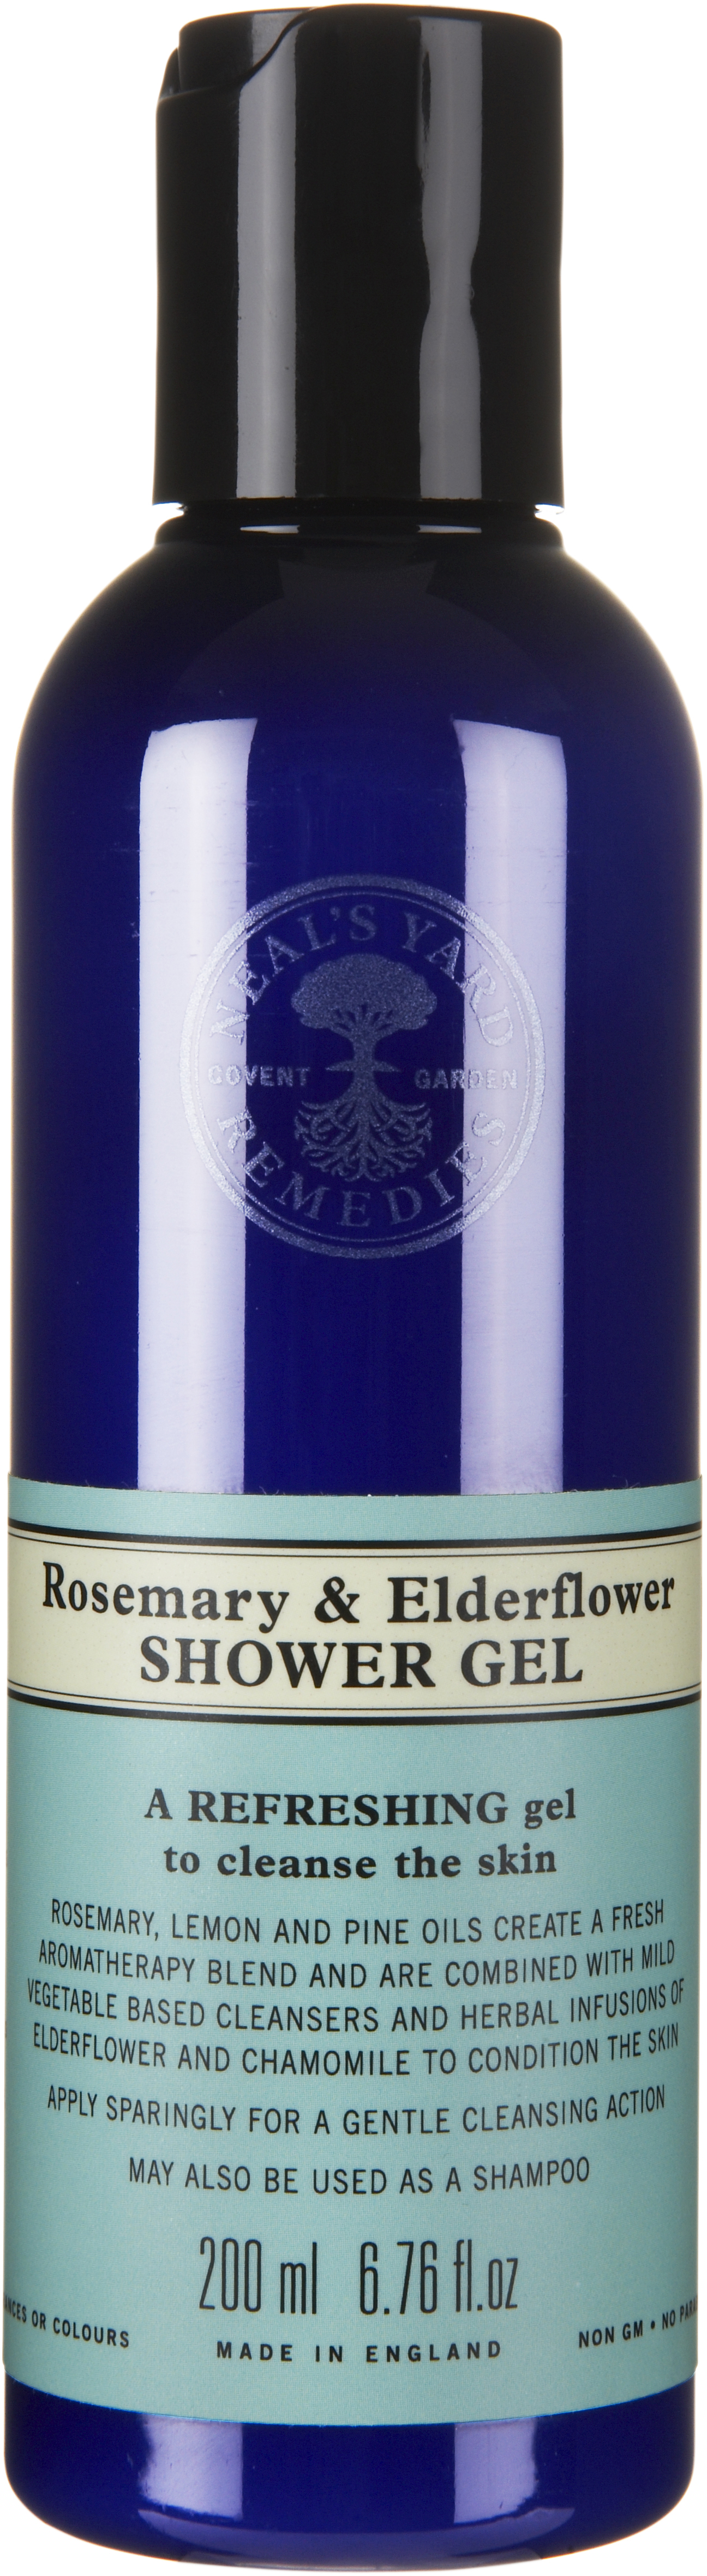 Neal’s Yard Remedies Rosemary & Elderflower Shower Gel